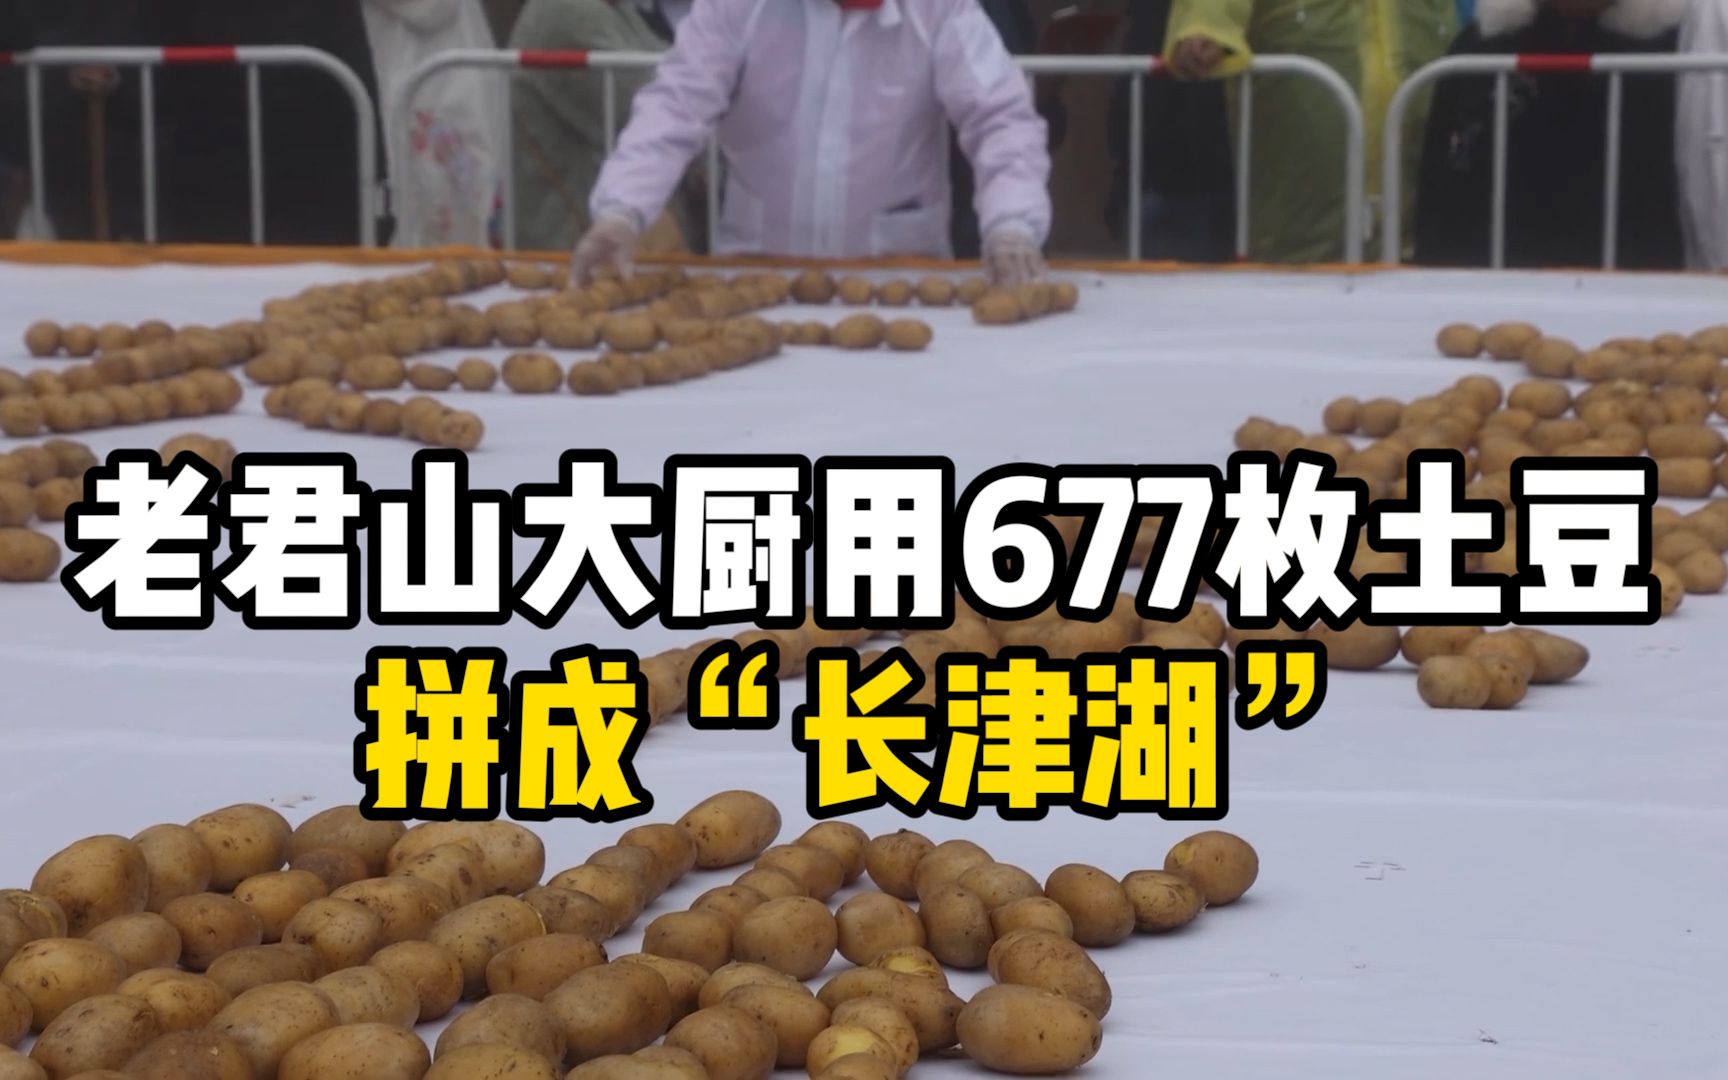 老君山大厨用677枚土豆拼成“长津湖”：致敬最可爱的人！